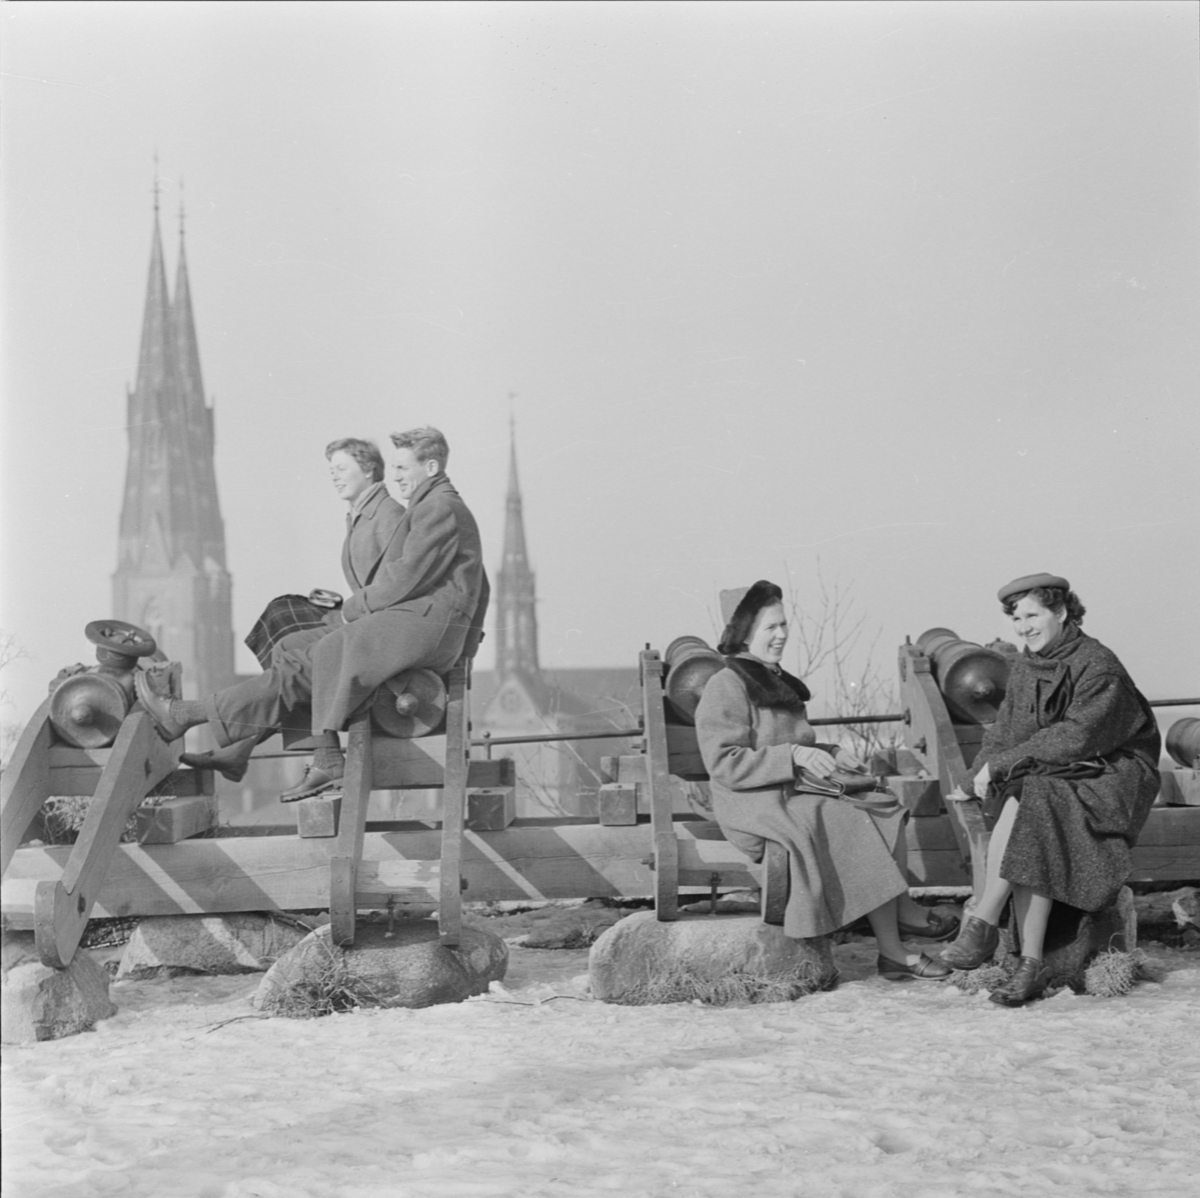 "Solande ungdomar vid Gunillaklockan i snö", Uppsala mars 1957